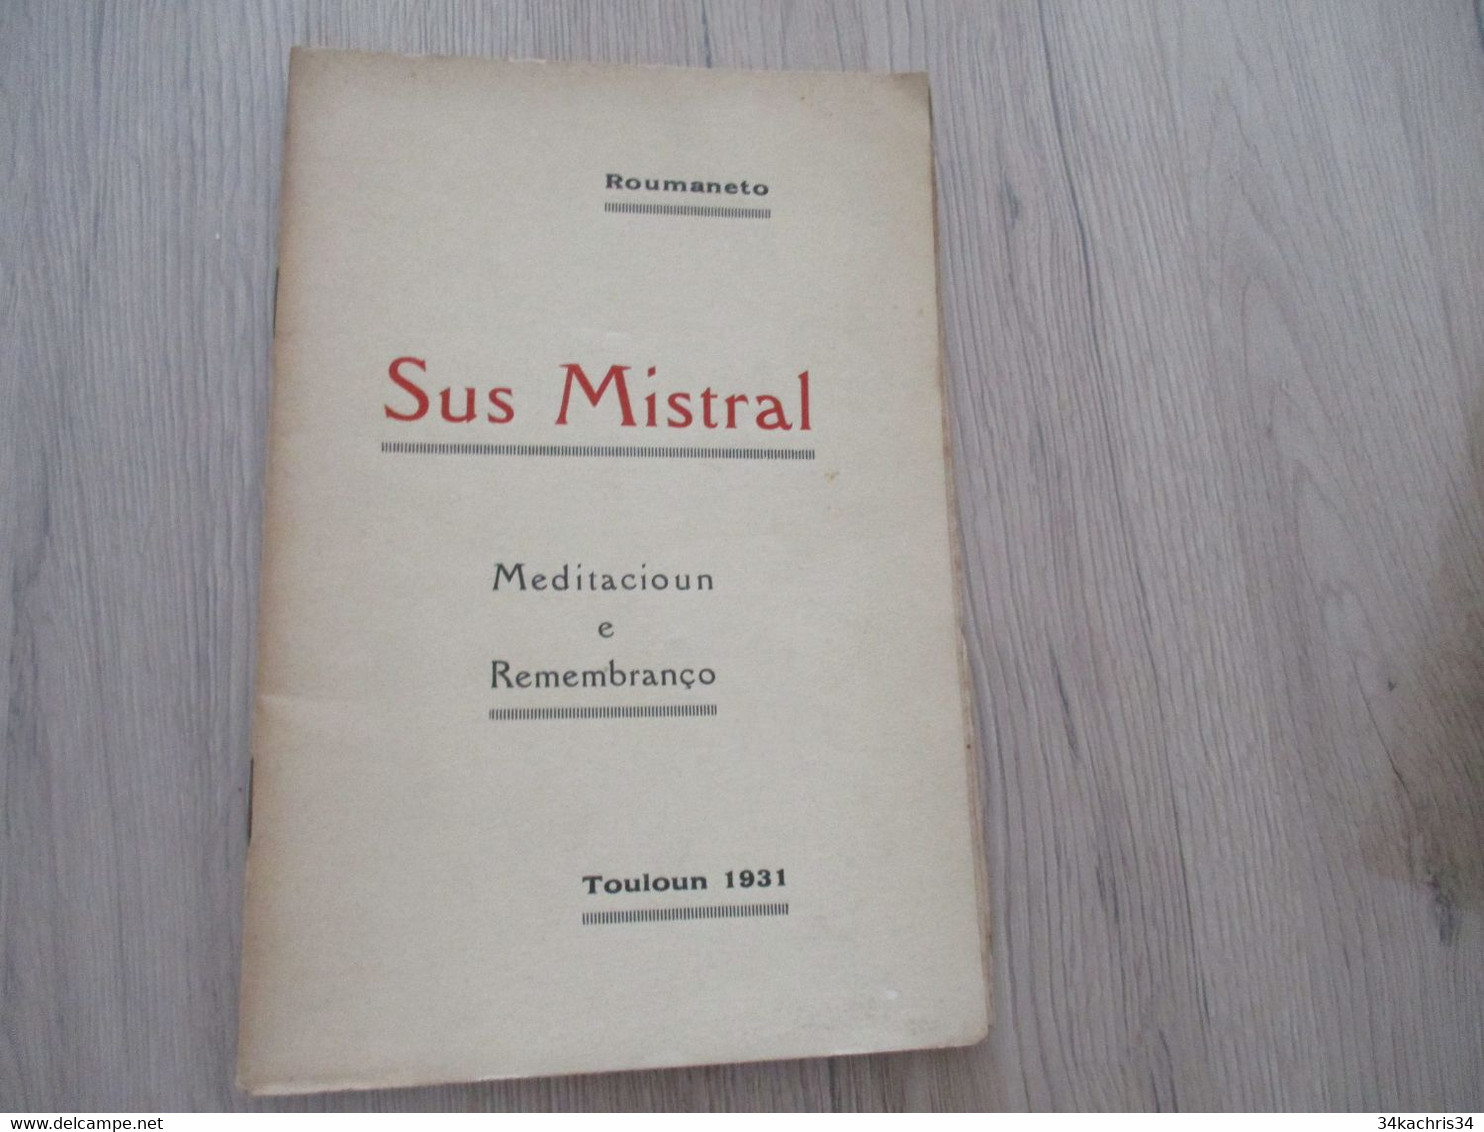 Provençal Félibrige  Mistral Roumaneto Envoi Autographe De L'auteur Sur Livre 1931 Sus Mistral Meditacioun Remembranço - Poesie